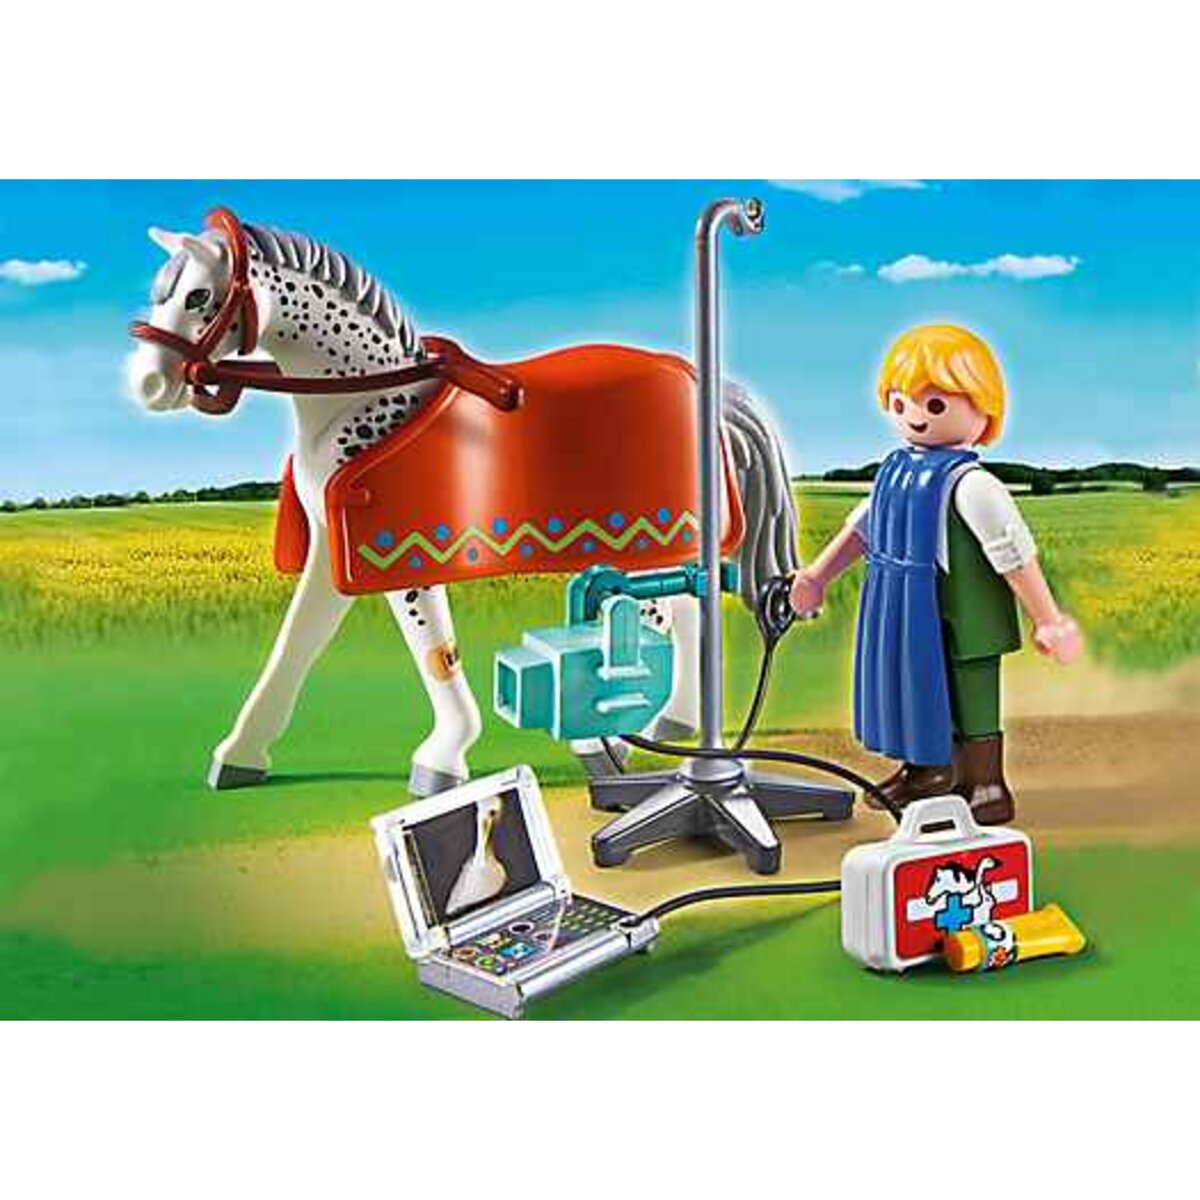 PLAYMOBIL - Vétérinaire avec cheval et appareil de radiologie - 5533